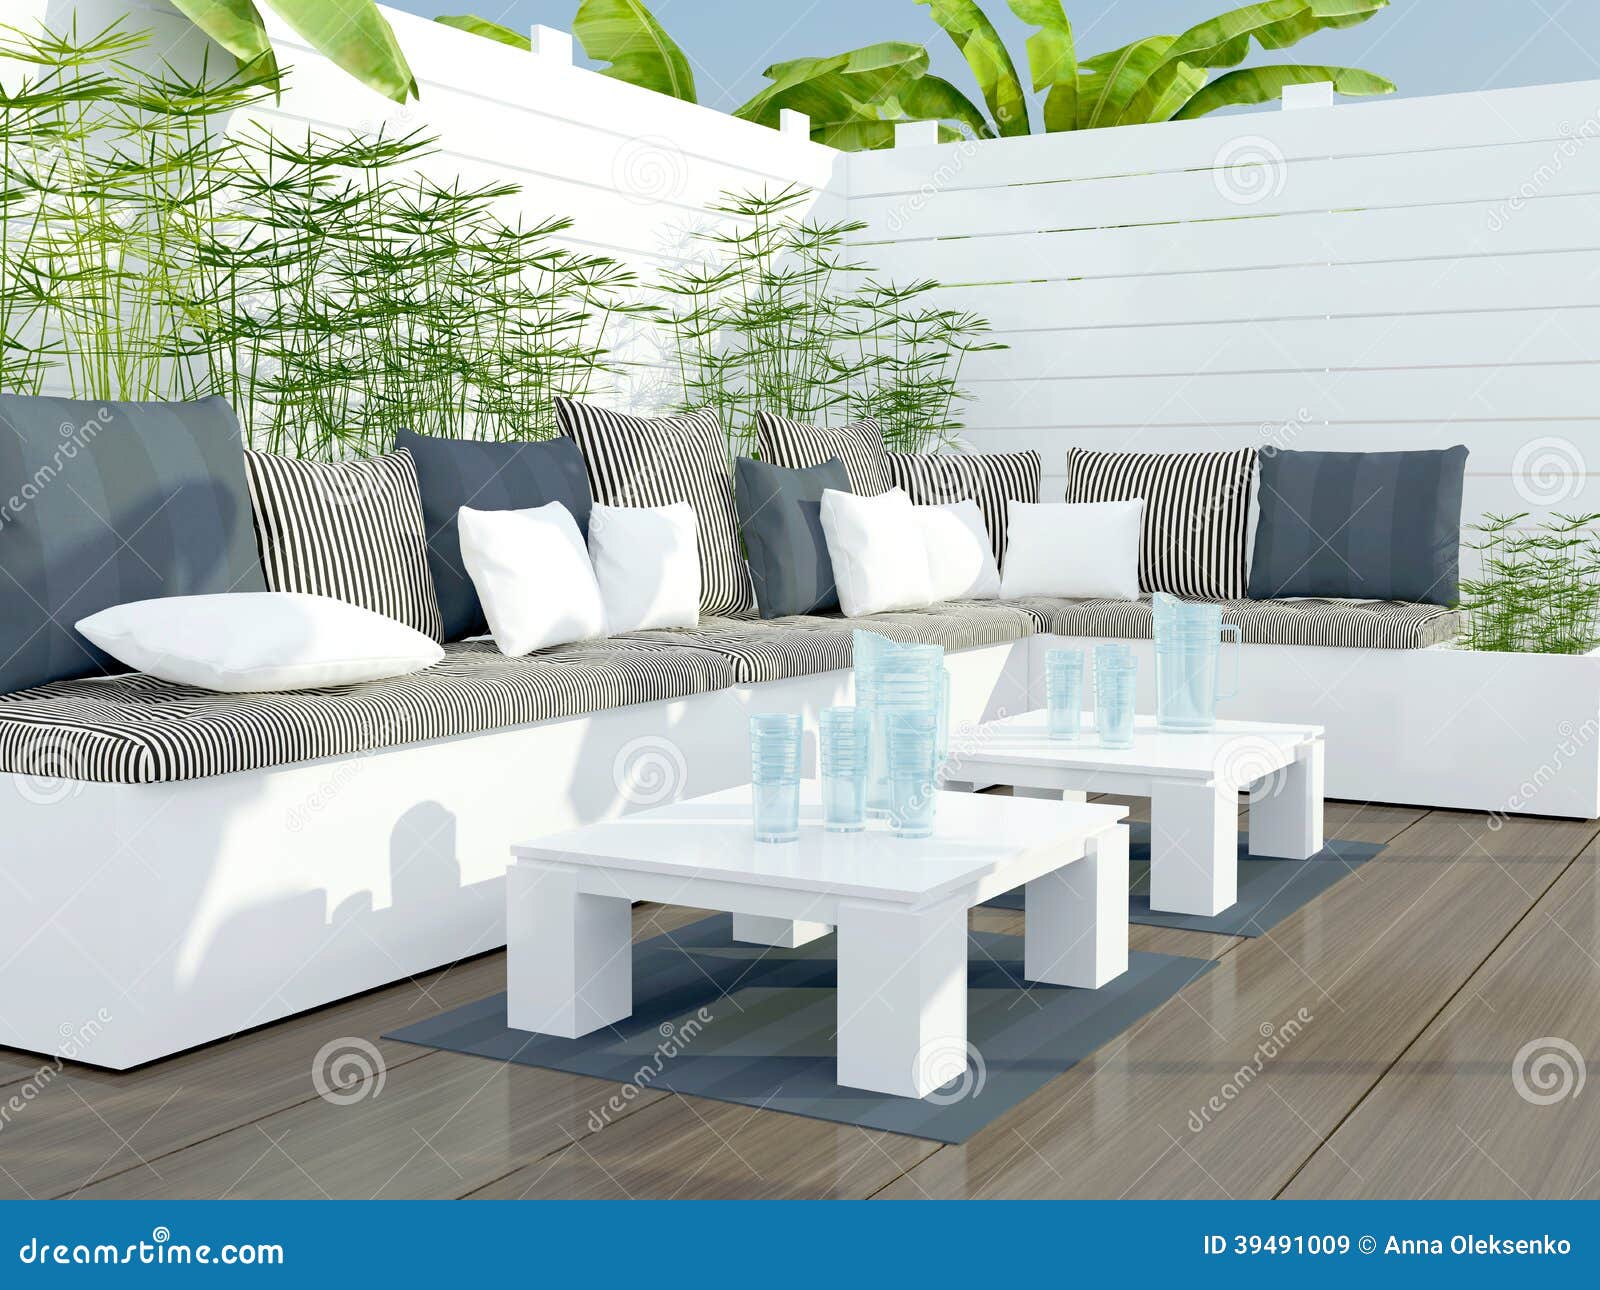 Area di disposizione dei posti a sedere all'aperto del patio. Area di disposizione dei posti a sedere all'aperto del patio con il grandi sofà e tavola bianchi.